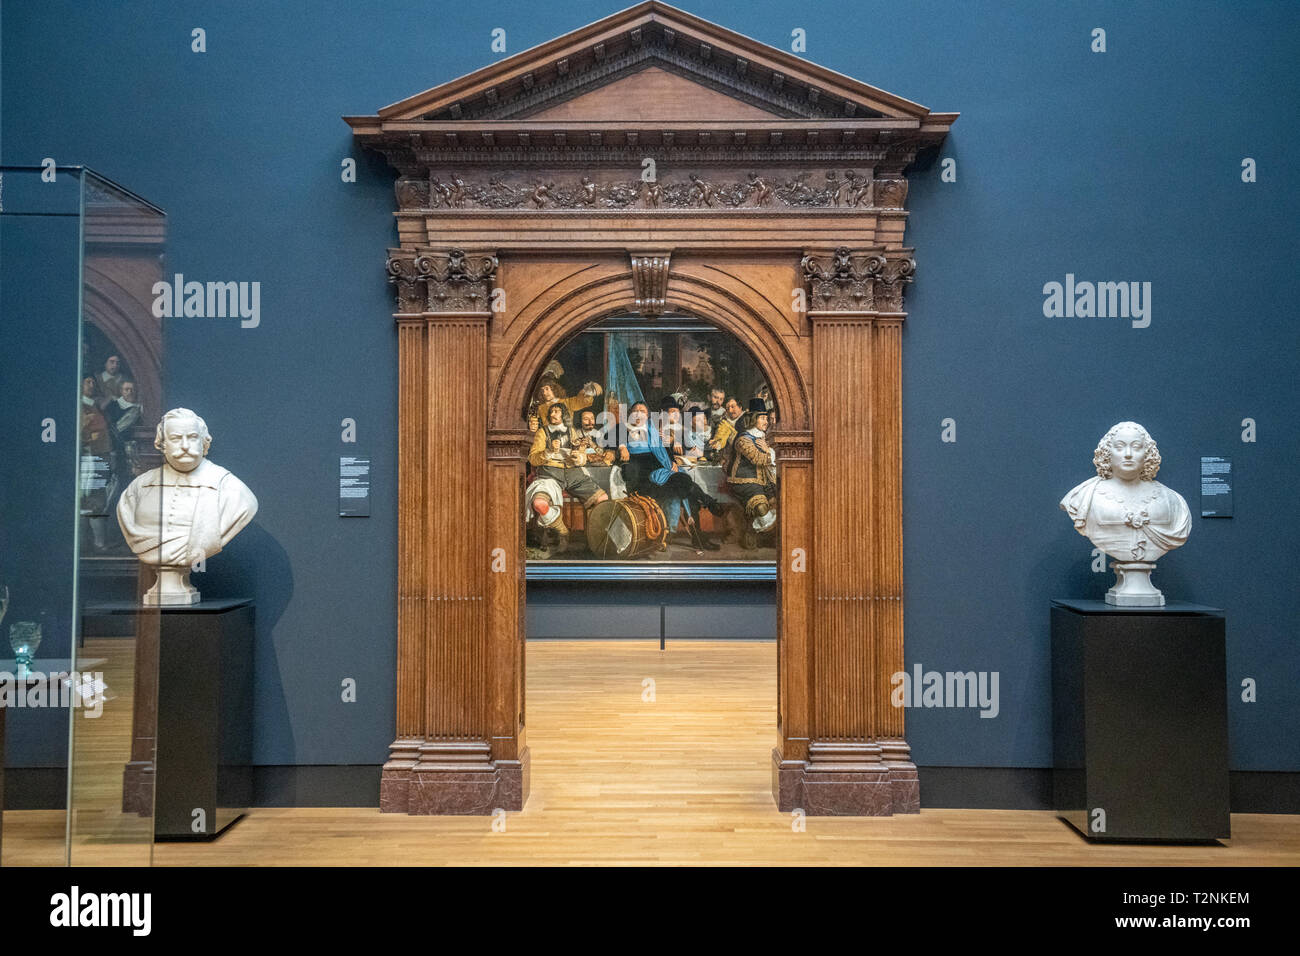 Un dipinto è incorniciato da un ornato arco in legno e due statue bianche nel Rijksmuseum di Amsterdam, Paesi Bassi Foto Stock